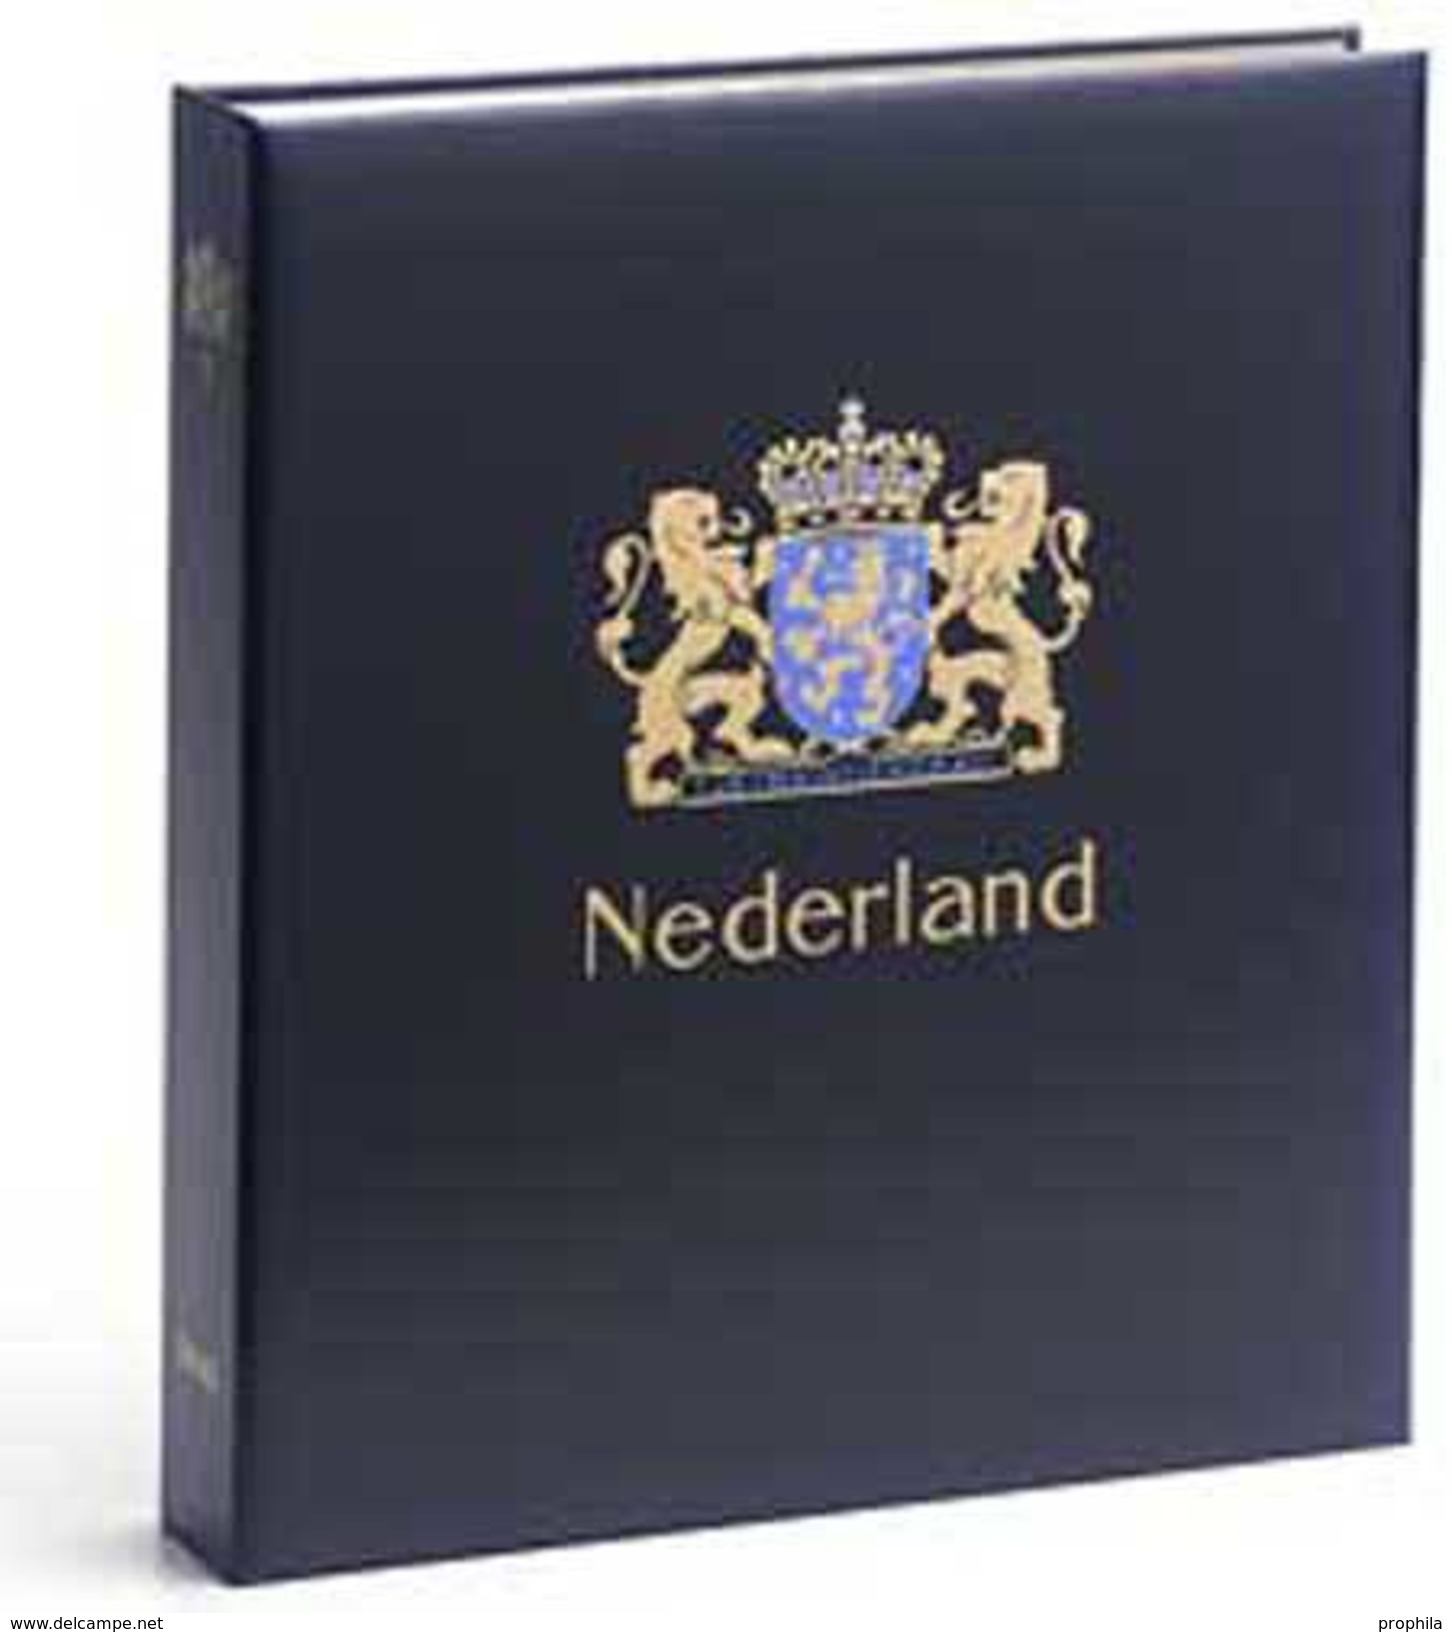 DAVO 144 Luxus Binder Briefmarkenalbum Niederlande IV - Groß, Grund Schwarz